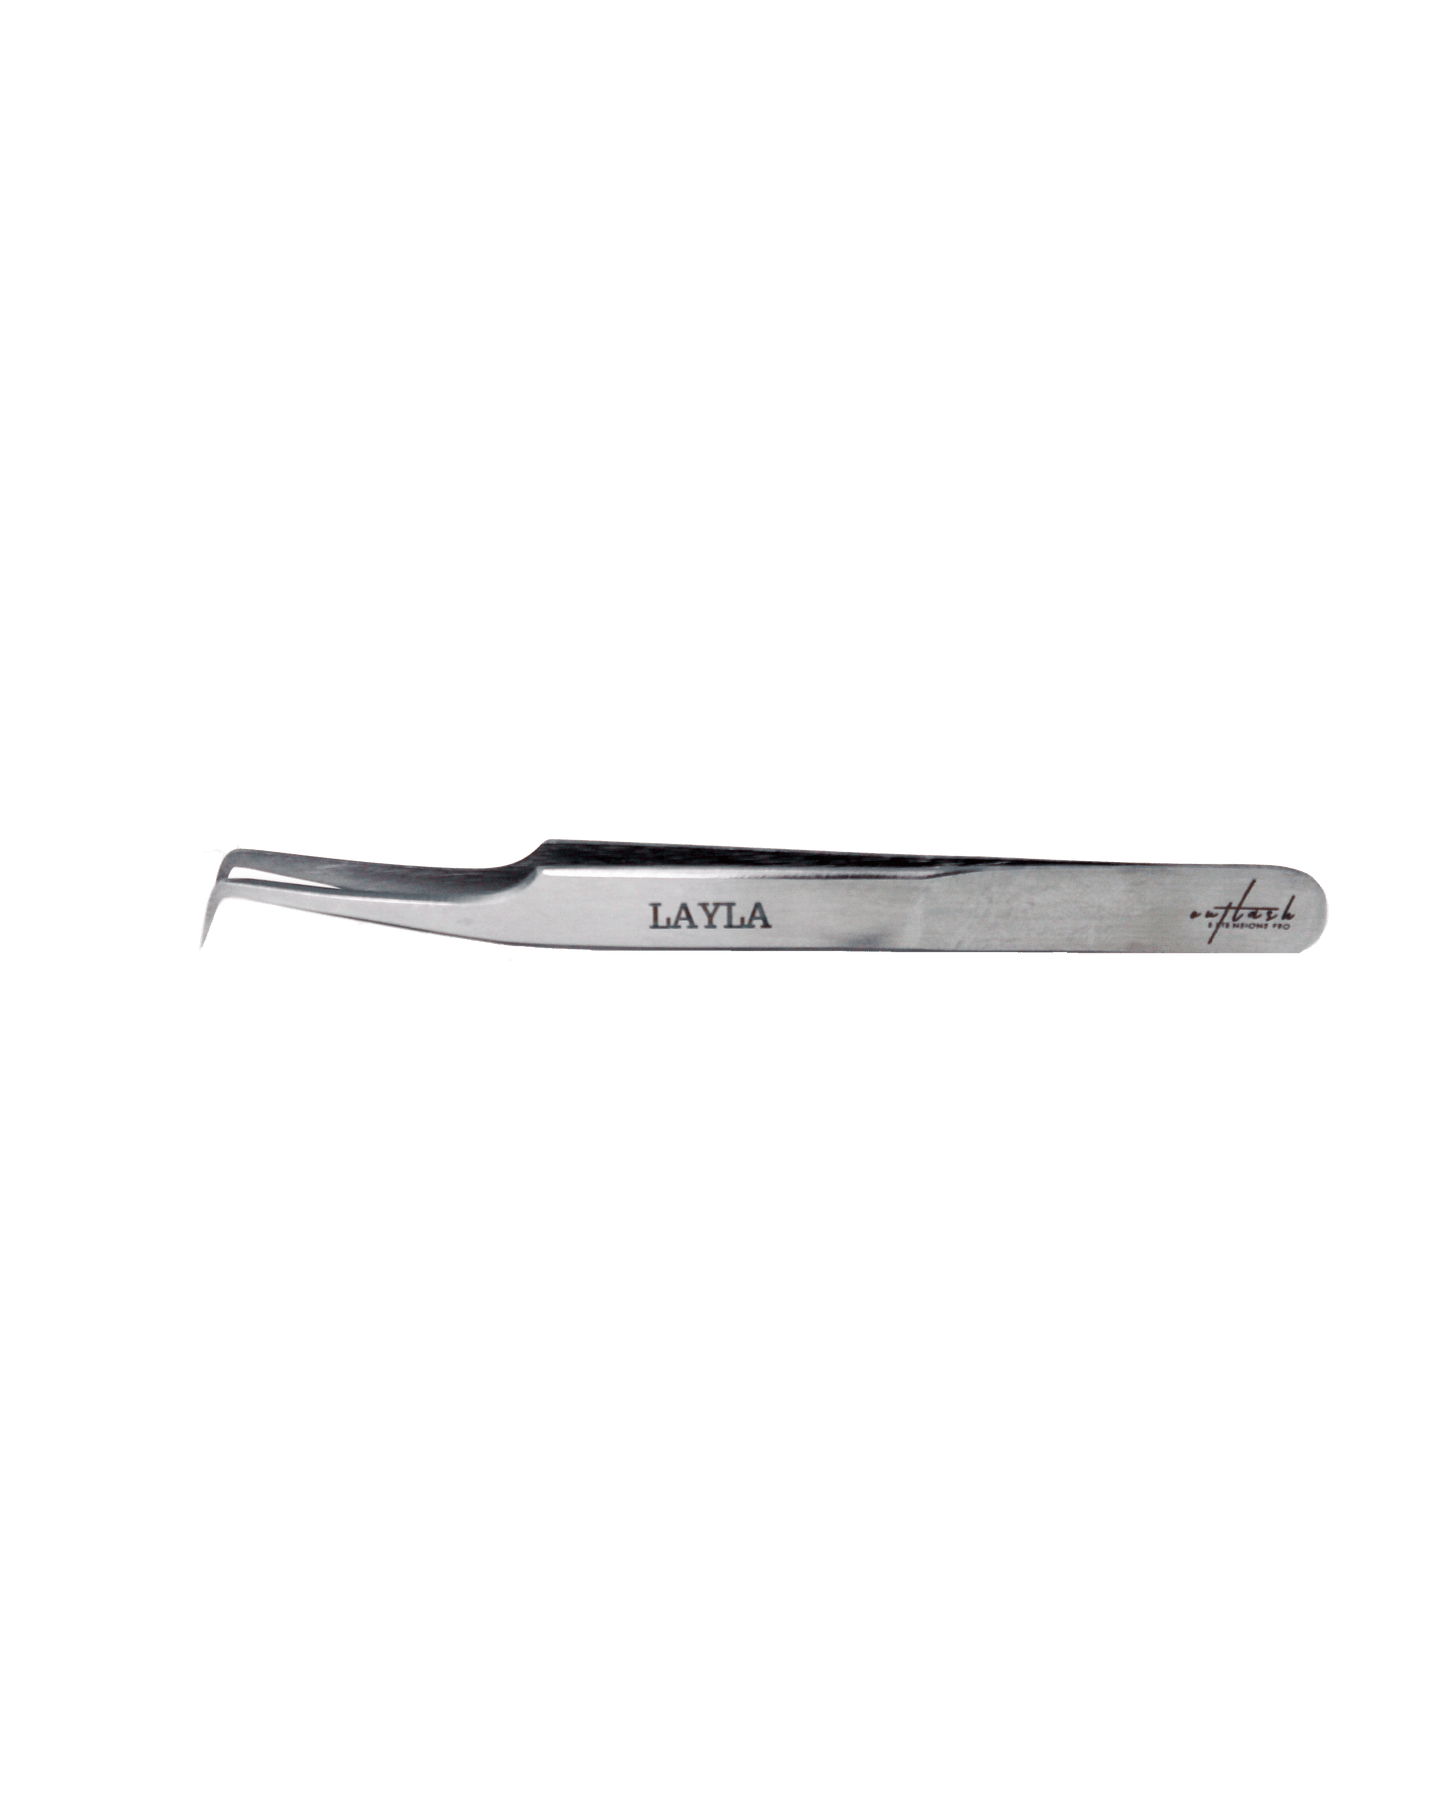 Layla Lash Extension Volume Tweezer | OutLash Extensions Pro